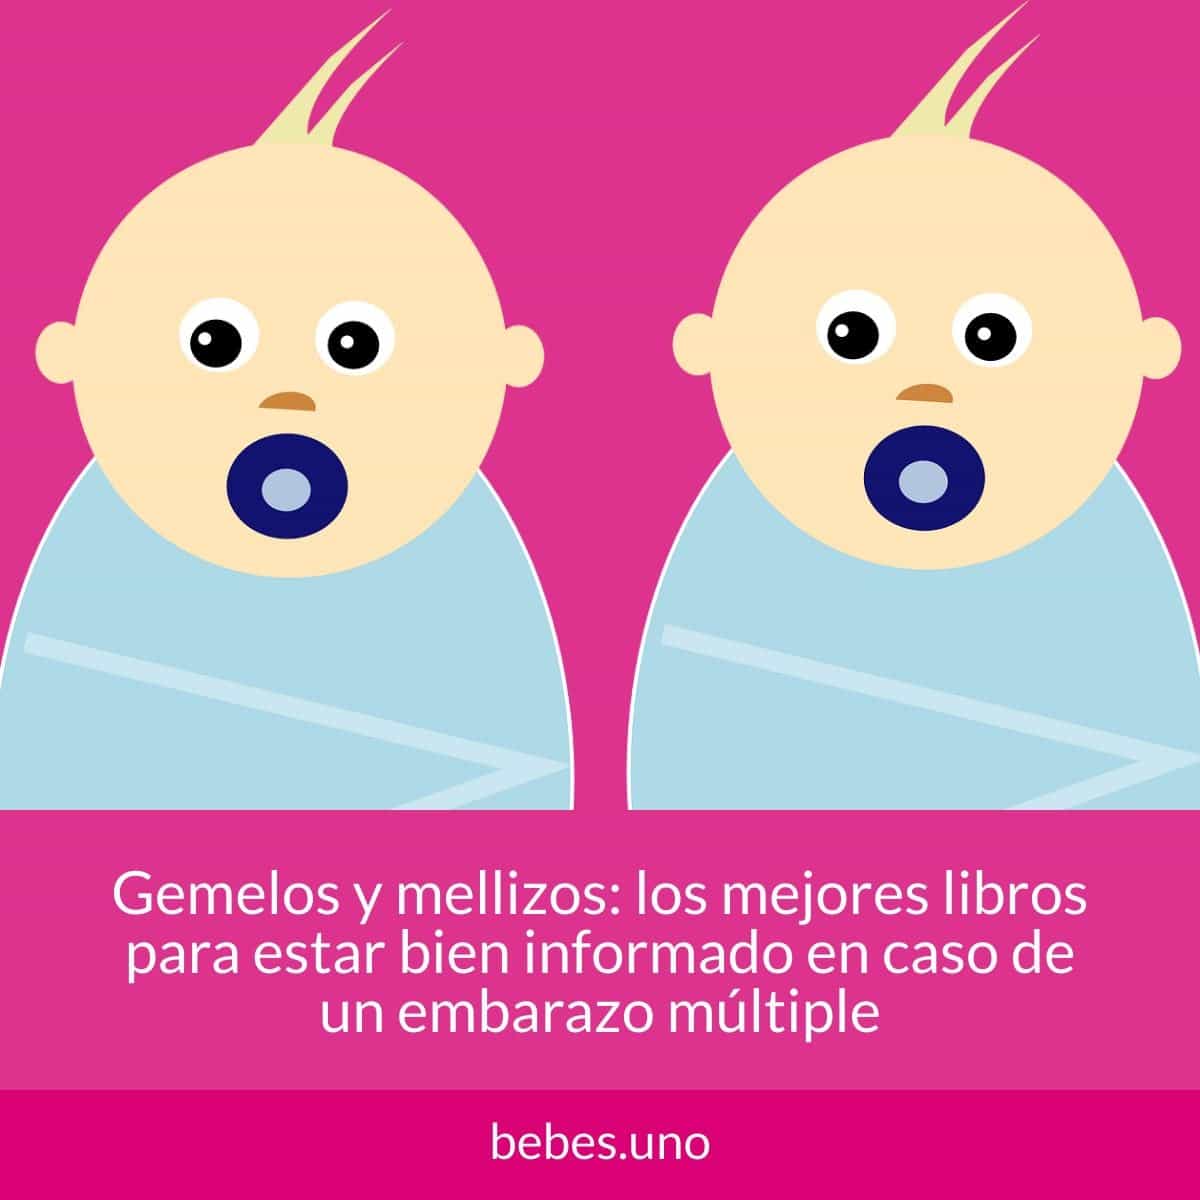 Gemelos y mellizos: los mejores libros para estar bien informado en caso de un embarazo múltiple